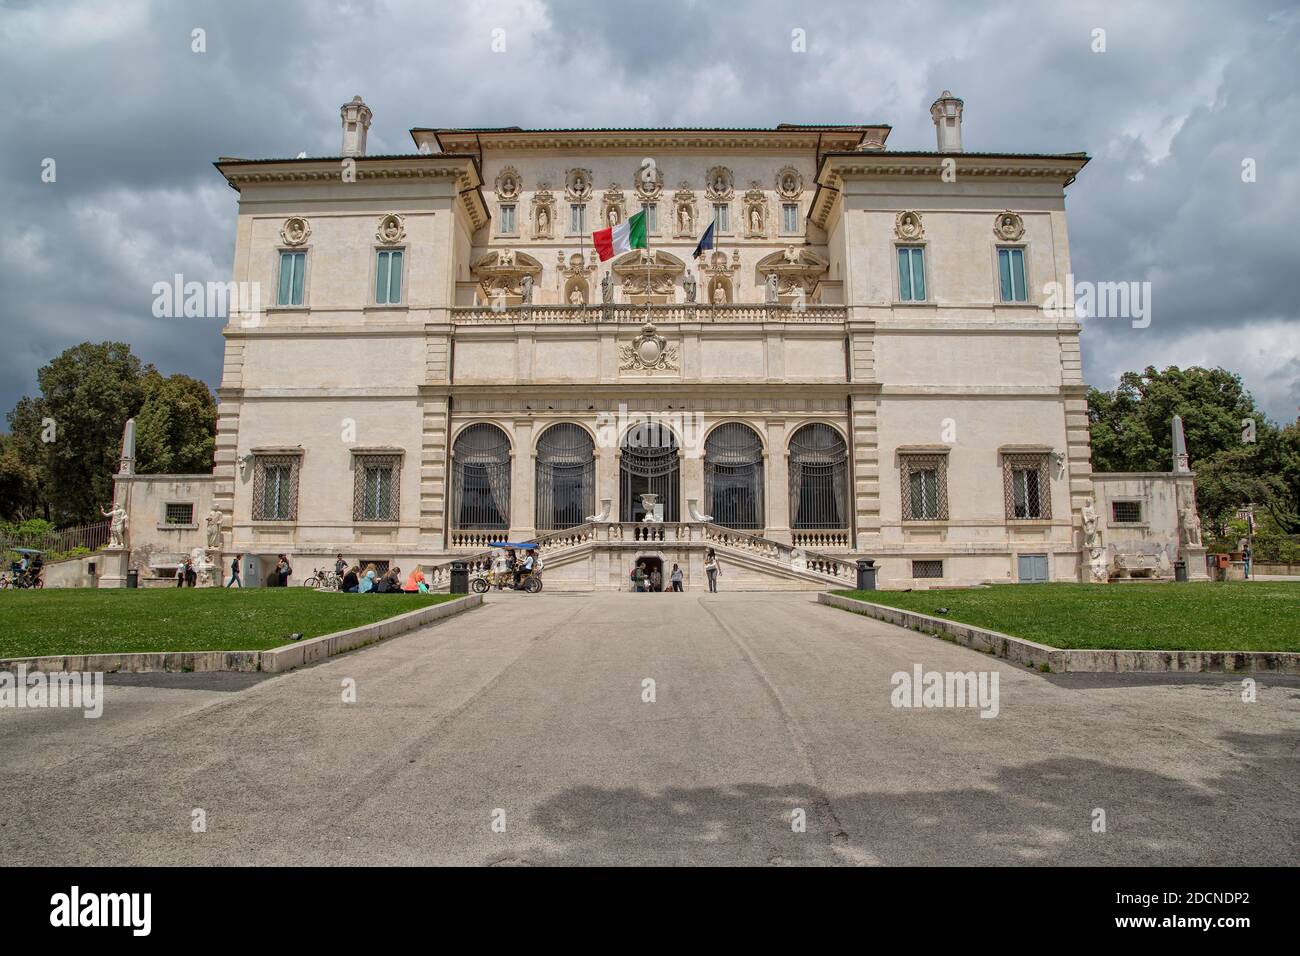 Roma, Italia - 15 maggio 2016: I turisti visitano la mostra alla Galleria Borghese e al Museo del Parco di Villa Borghese nella città di Roma. Foto Stock